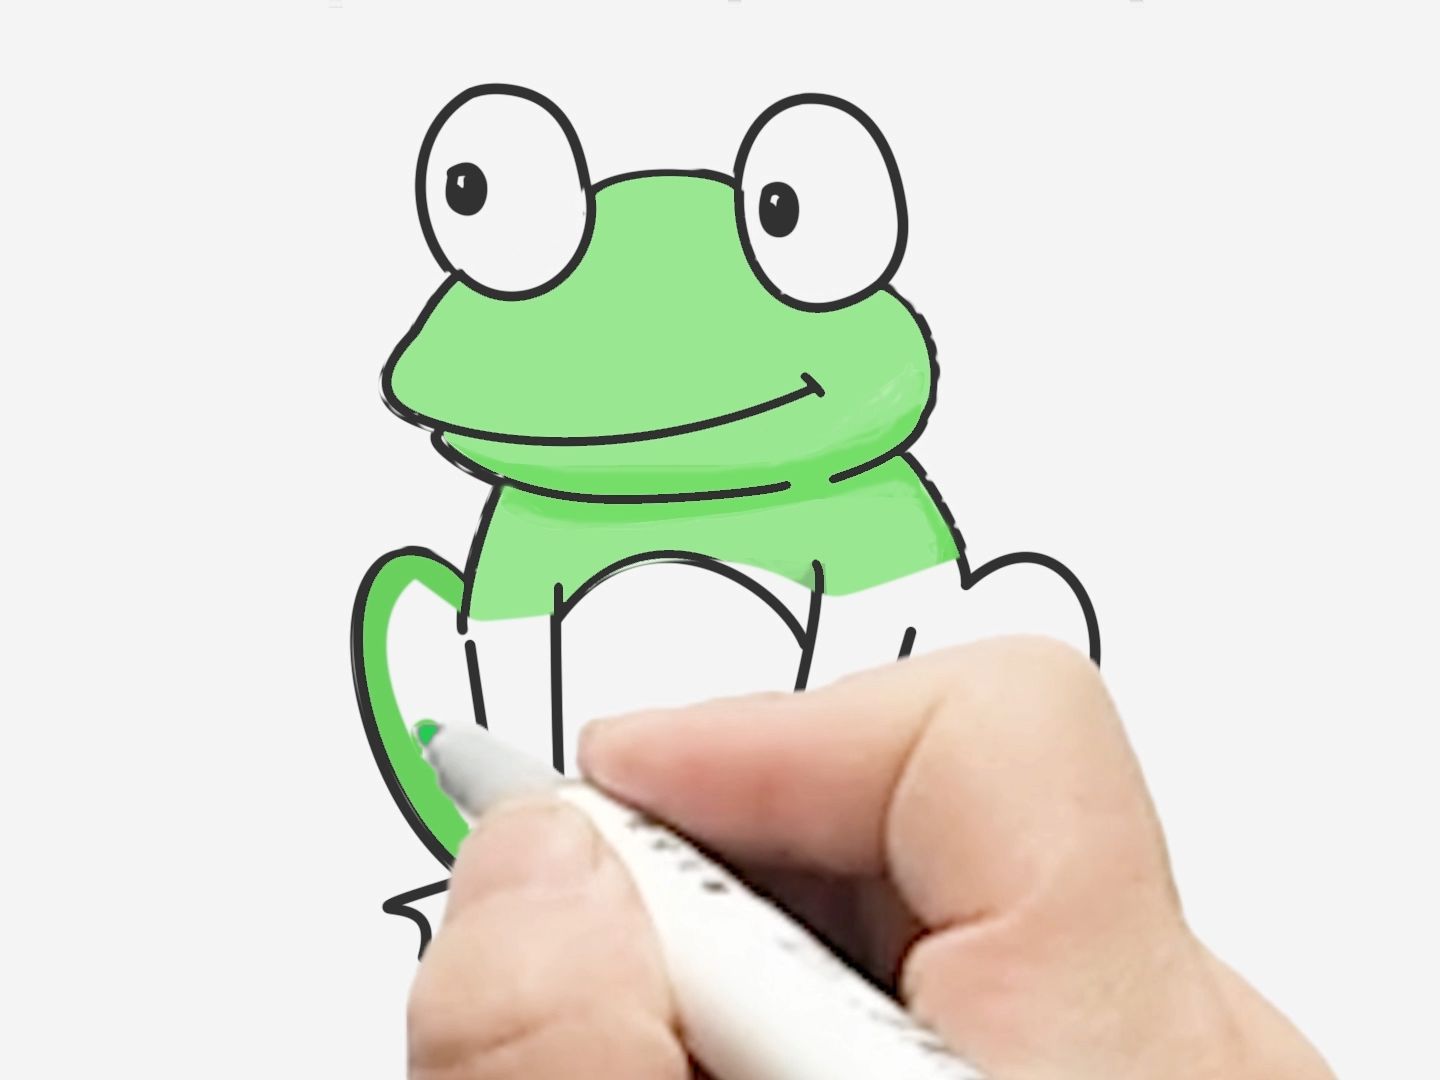 青蛙的变化简笔画图片